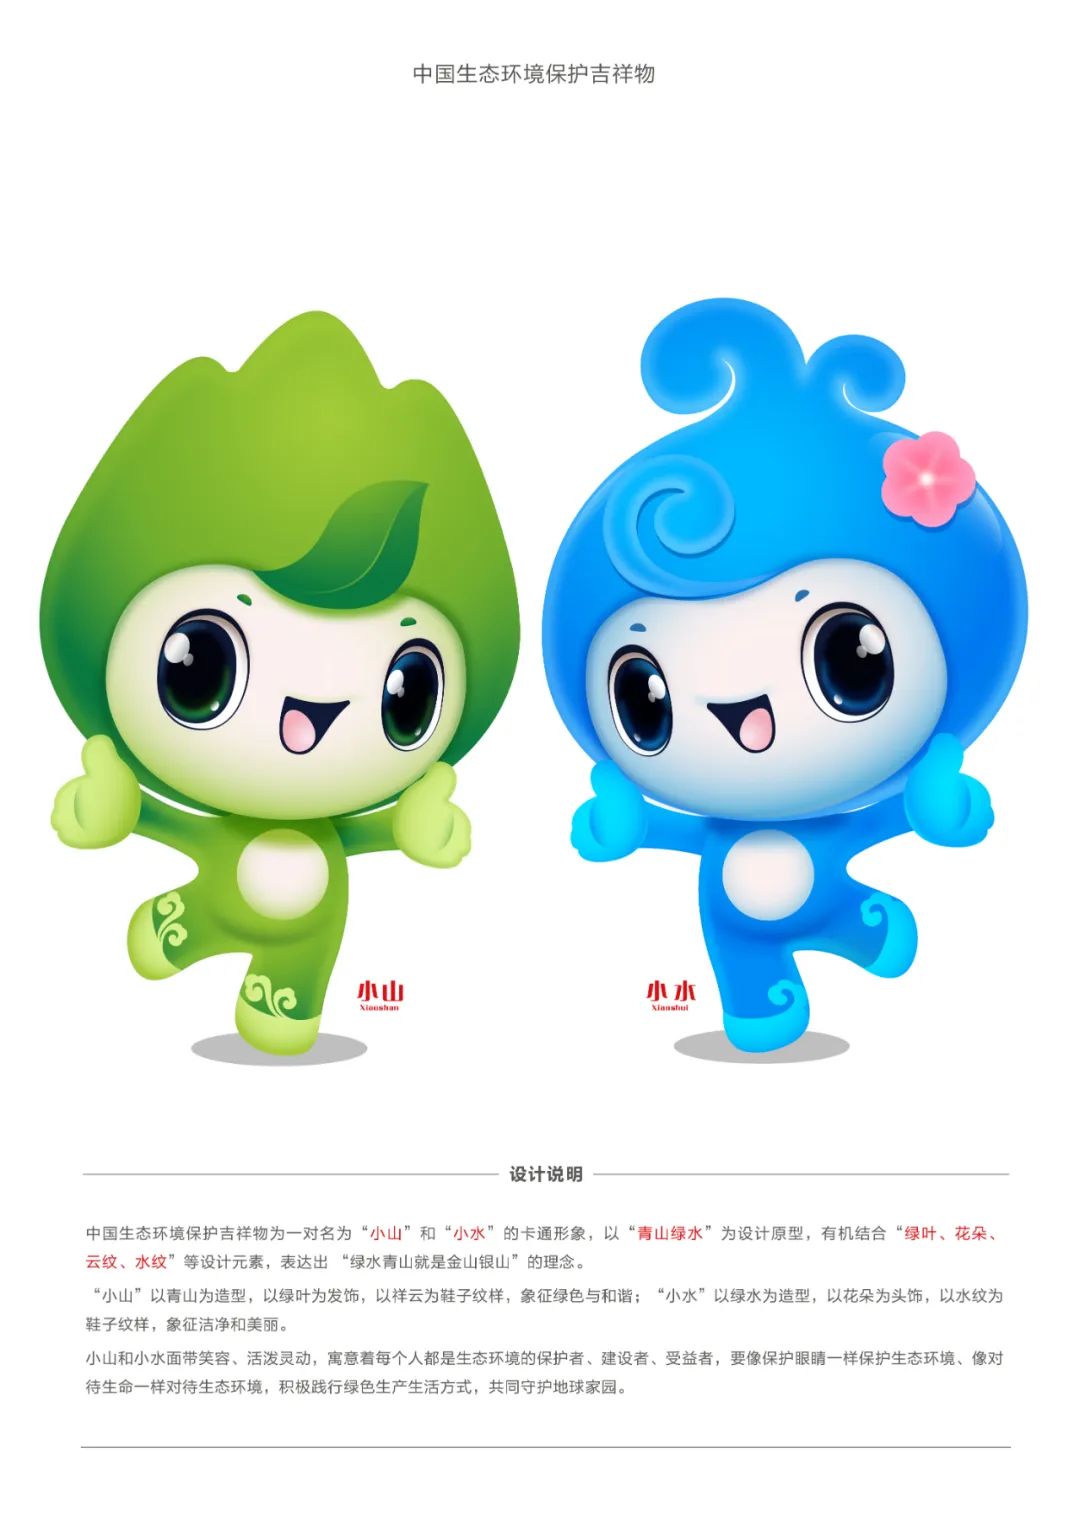 中国生态环境保护吉祥物正式发布 命名为小山和